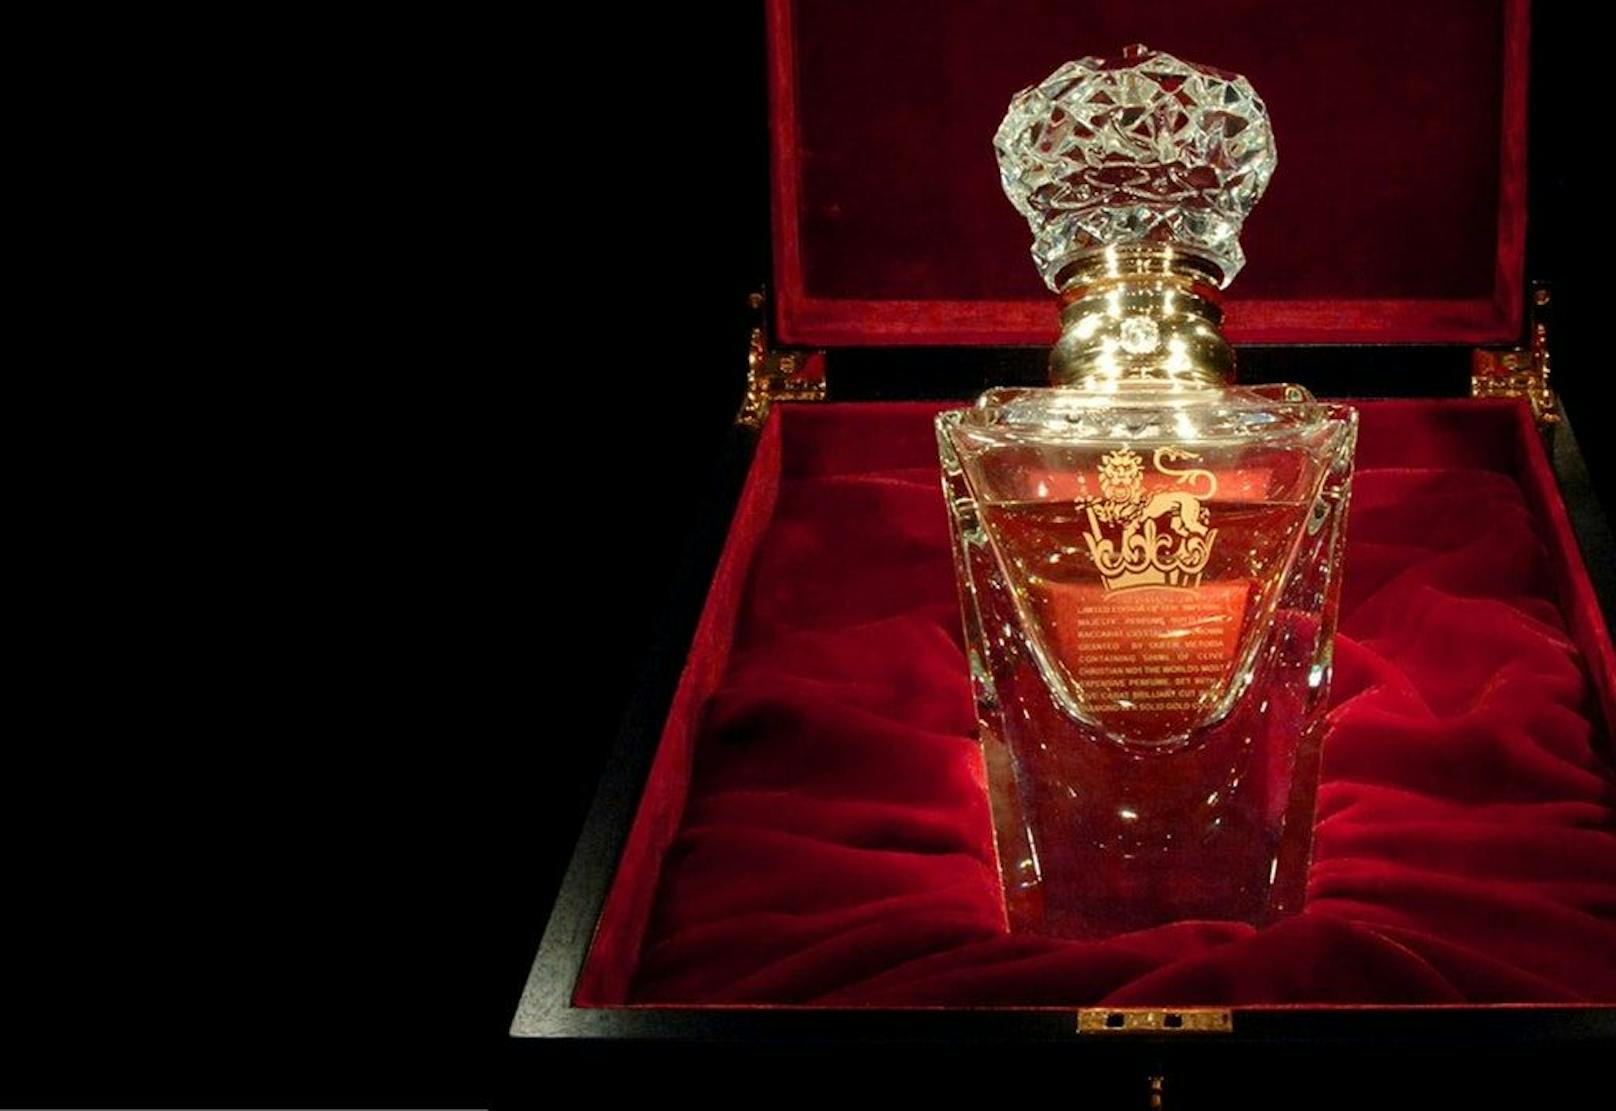 <strong>#1: “Imperial Majesty” von Clive Christian! </strong>Das teuerste Parfum der Welt kostet ganze 375.000 Euro. Warum? Ganz einfach: Allein der Flakon besteht bereits aus feinstem geschliffenem Glas, einem Flaschenhals aus 18-karätigem Gold und einem 5-karätigen Diamanten. Eigentümer dieses Schmuckstücks verbrauchen diese feinste Mischung nicht, sondern heben sie als besonderen Wertgegenstand auf. Denn das Parfum ist seit 2006 vom Markt und findet sich seither nur bei Sammlern.<br>